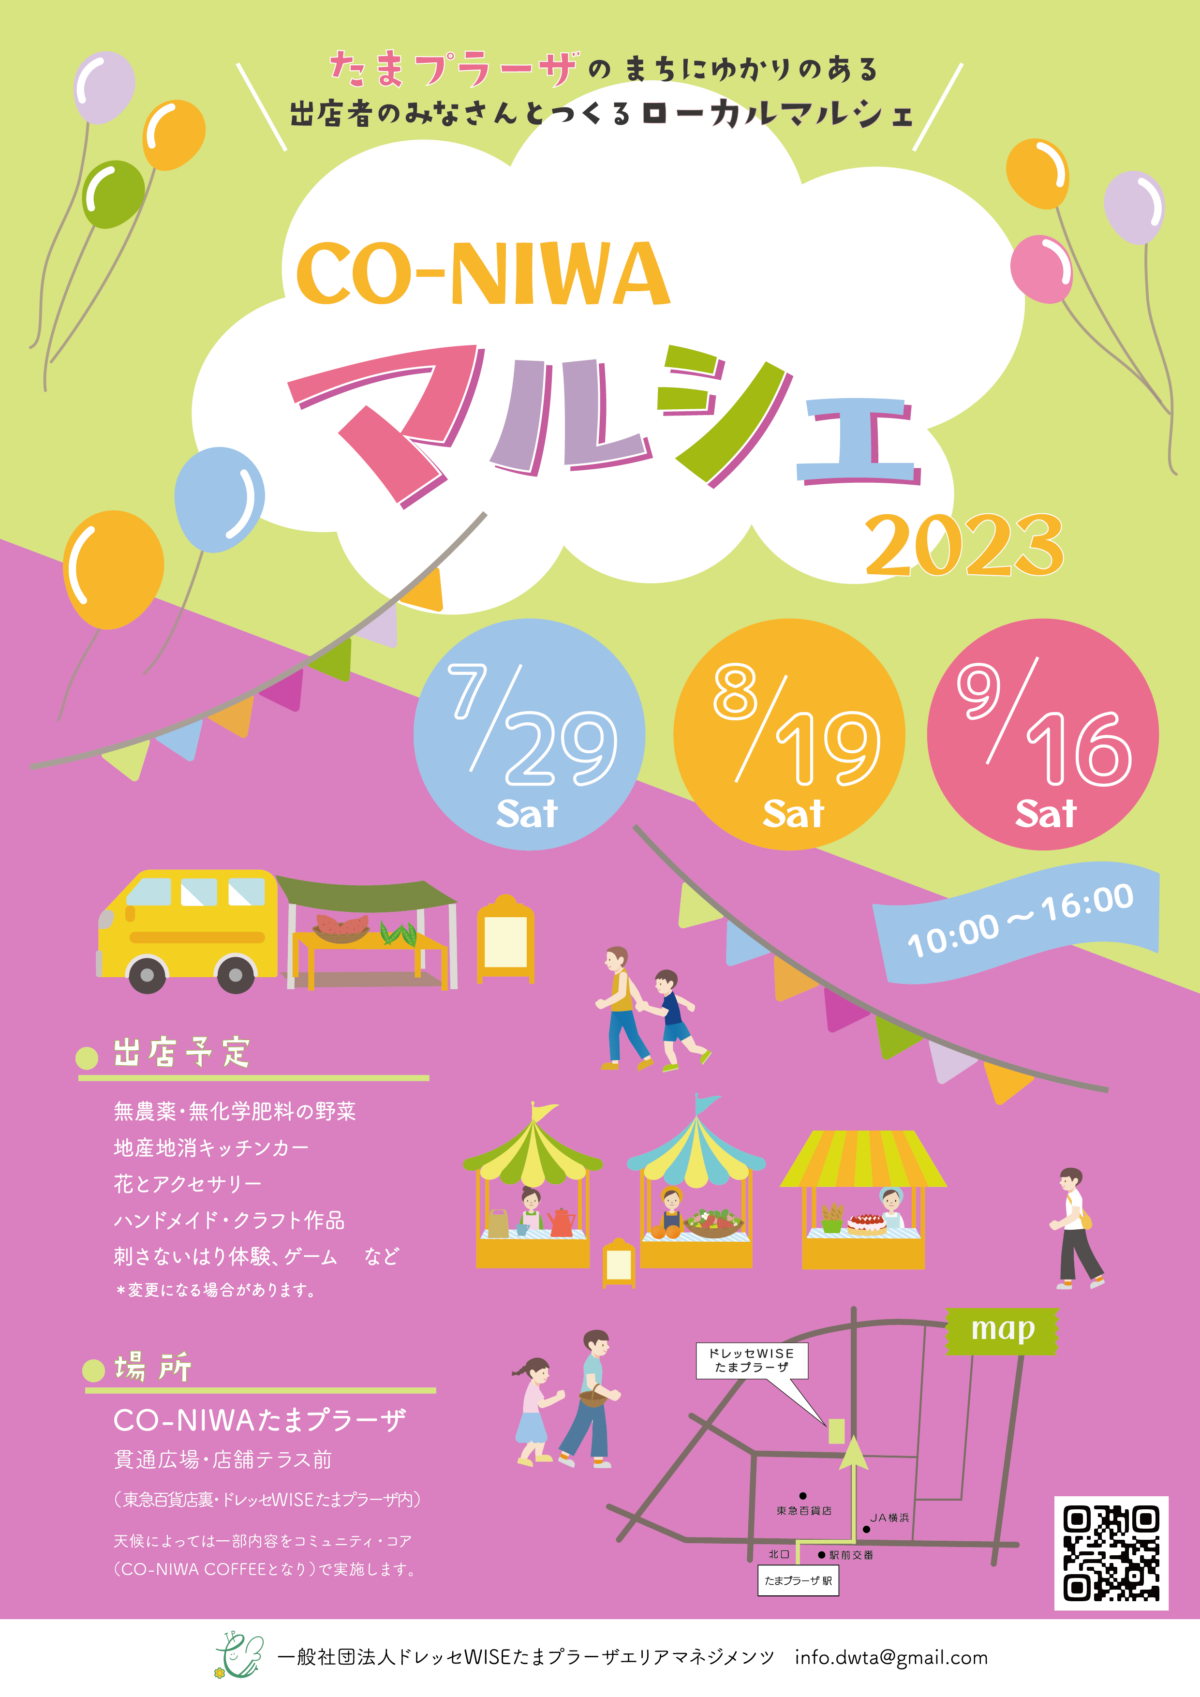 coniwa_marche